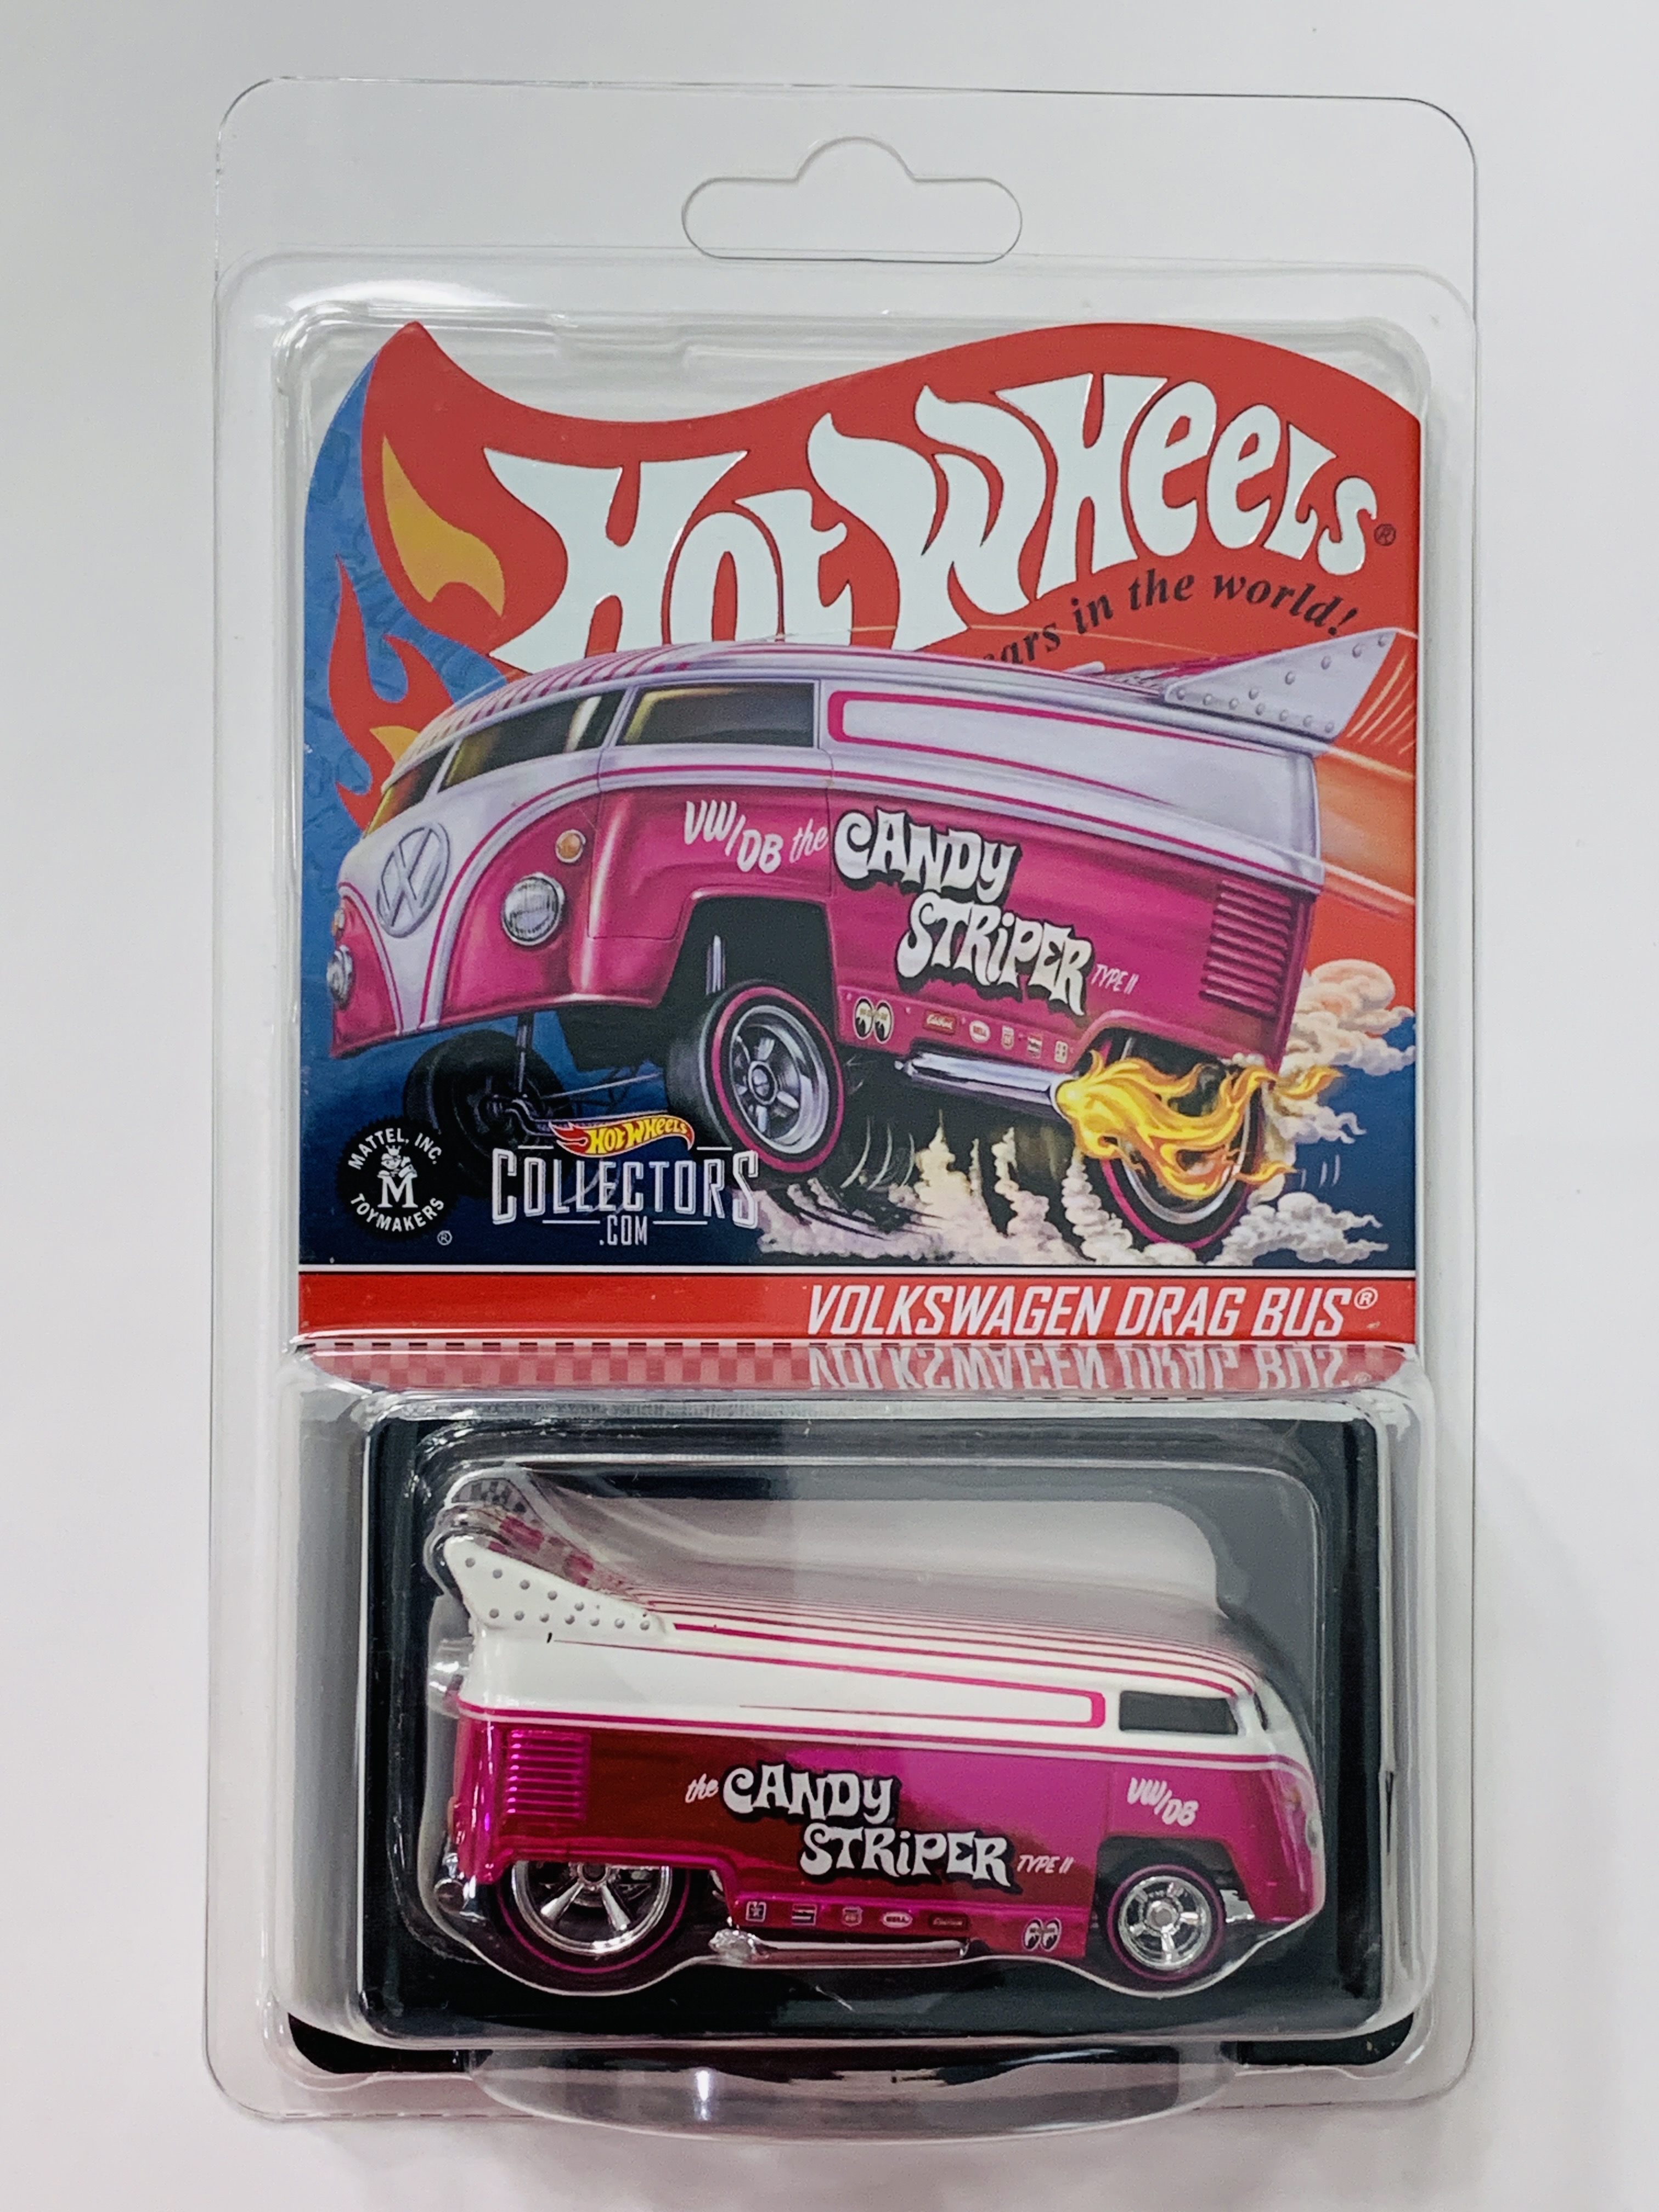 Hot Wheels Redline Club Candy Striper Volkswagen Drag Bus - 6288/20000